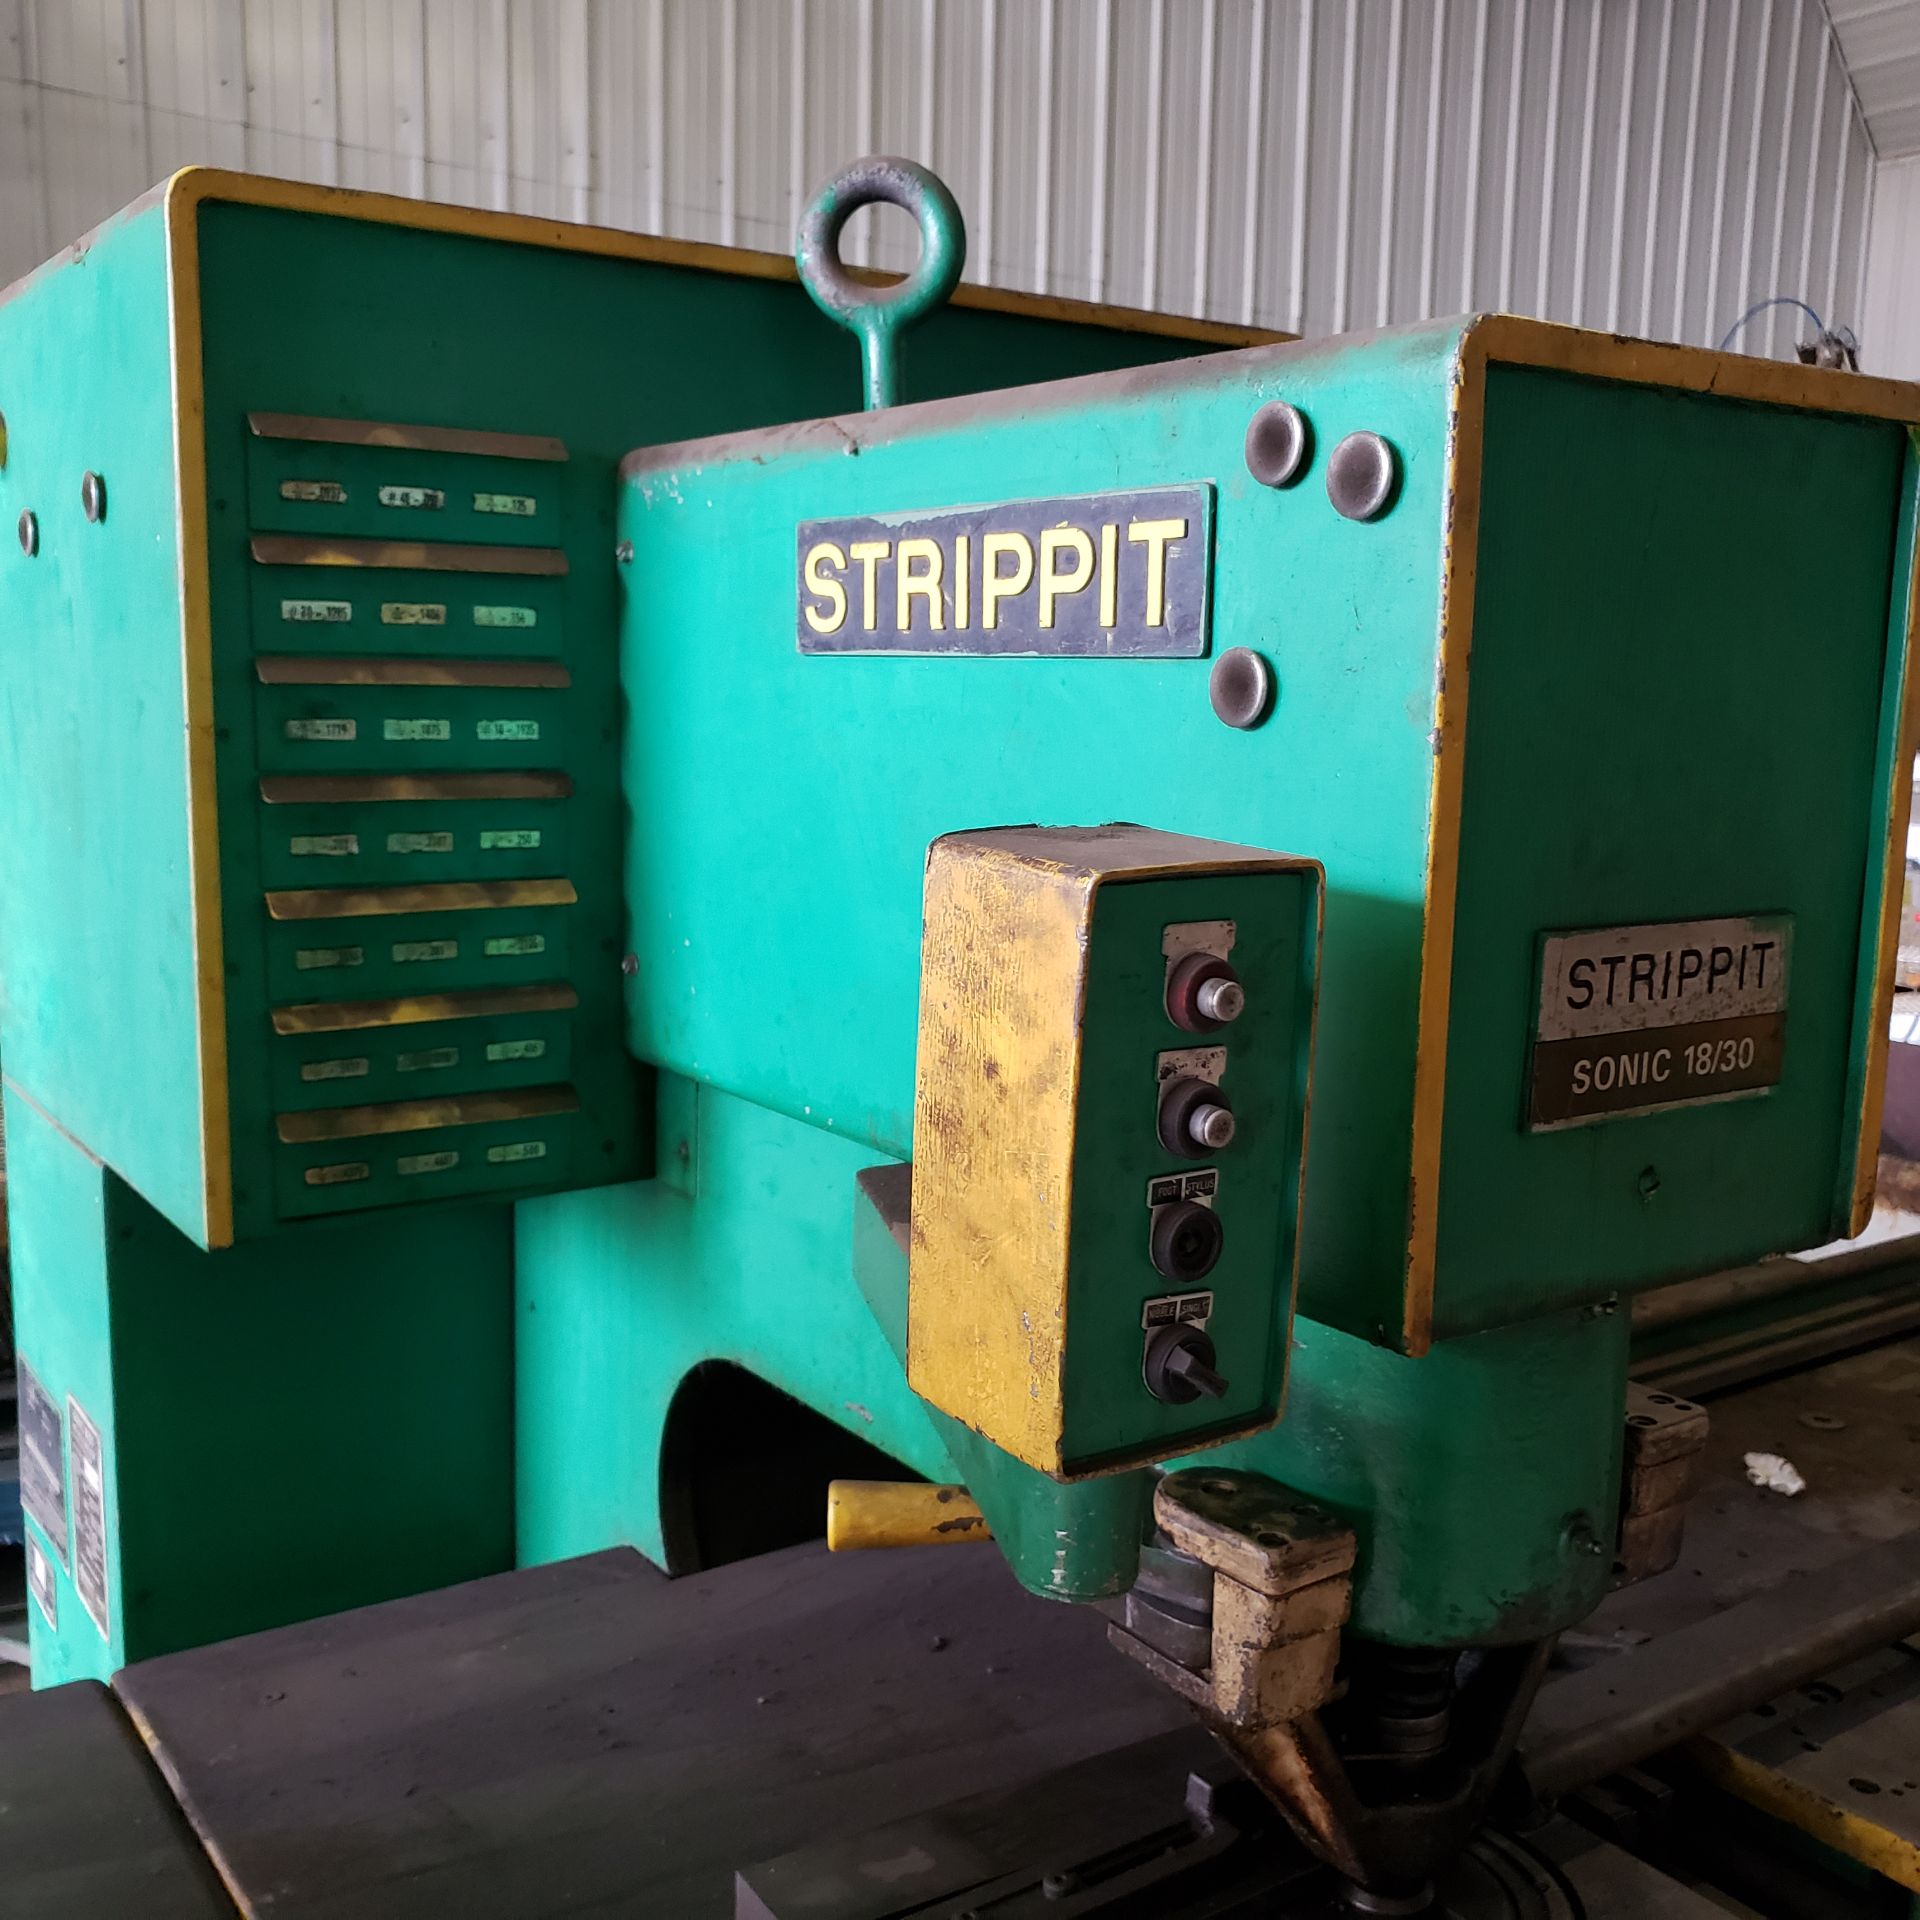 STRIPPIT Sonic Sheetmetal Fabricator Model 18/30, s/n 06181866 - Image 4 of 4